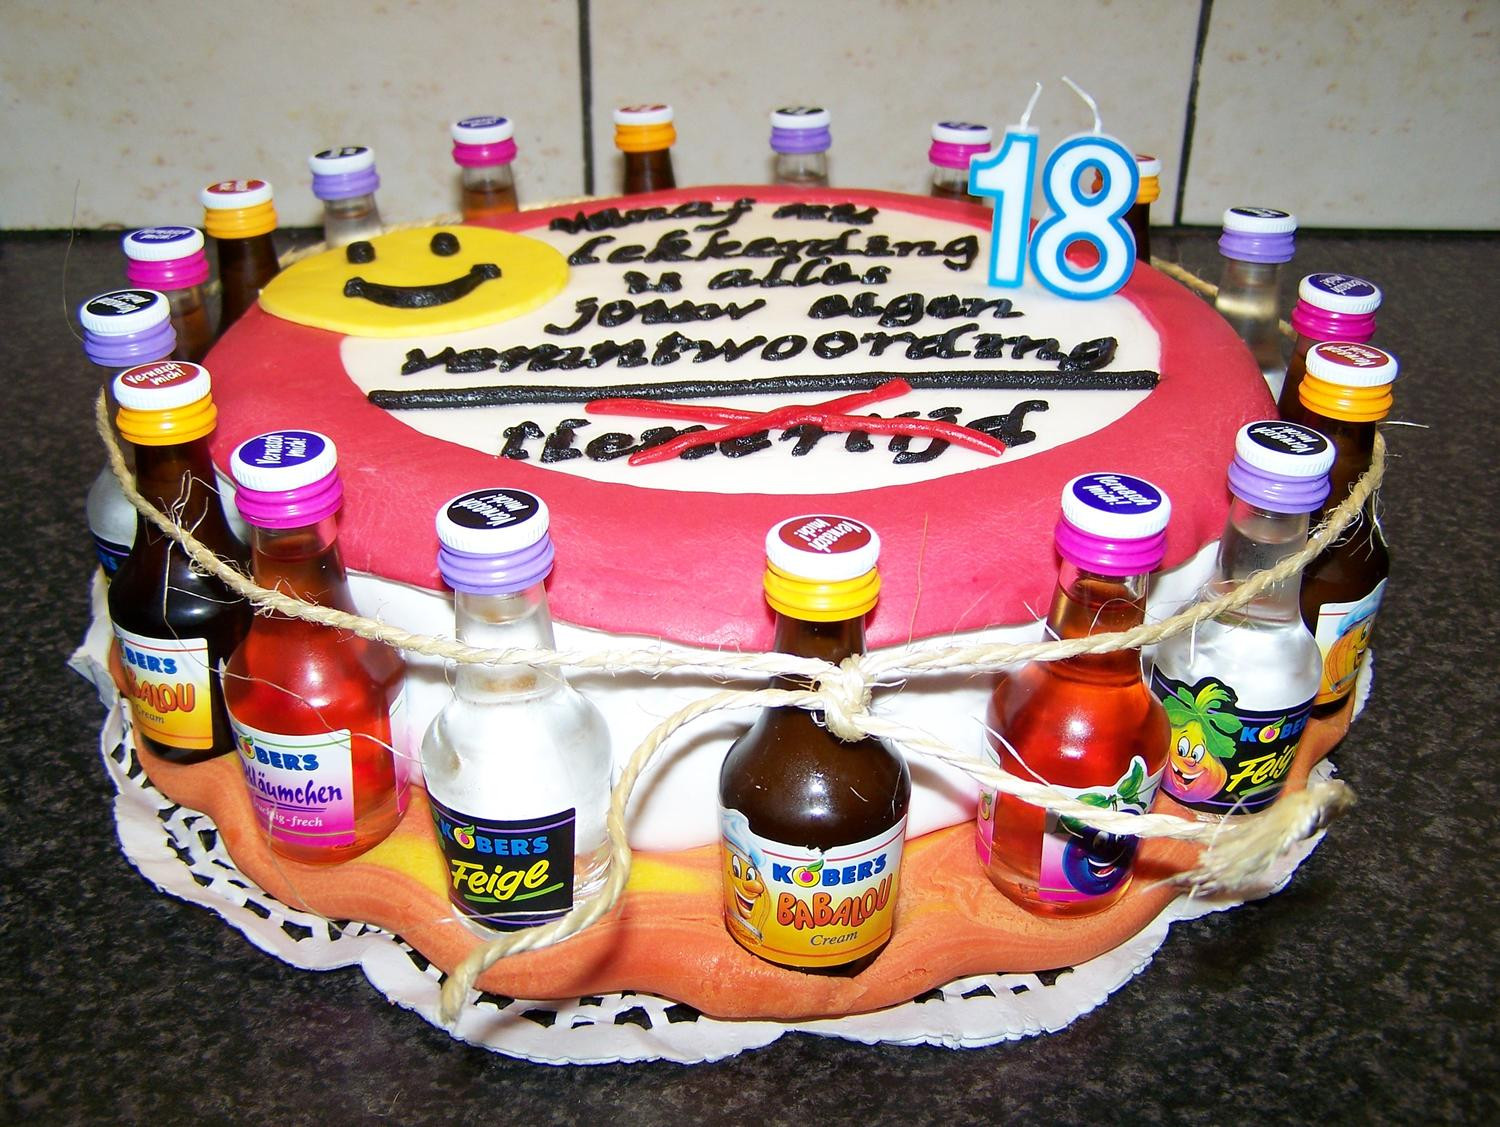 Geschenke Zum 11 Geburtstag
 Robby s Torte zum 18 Geburtstag Rezept kochbar